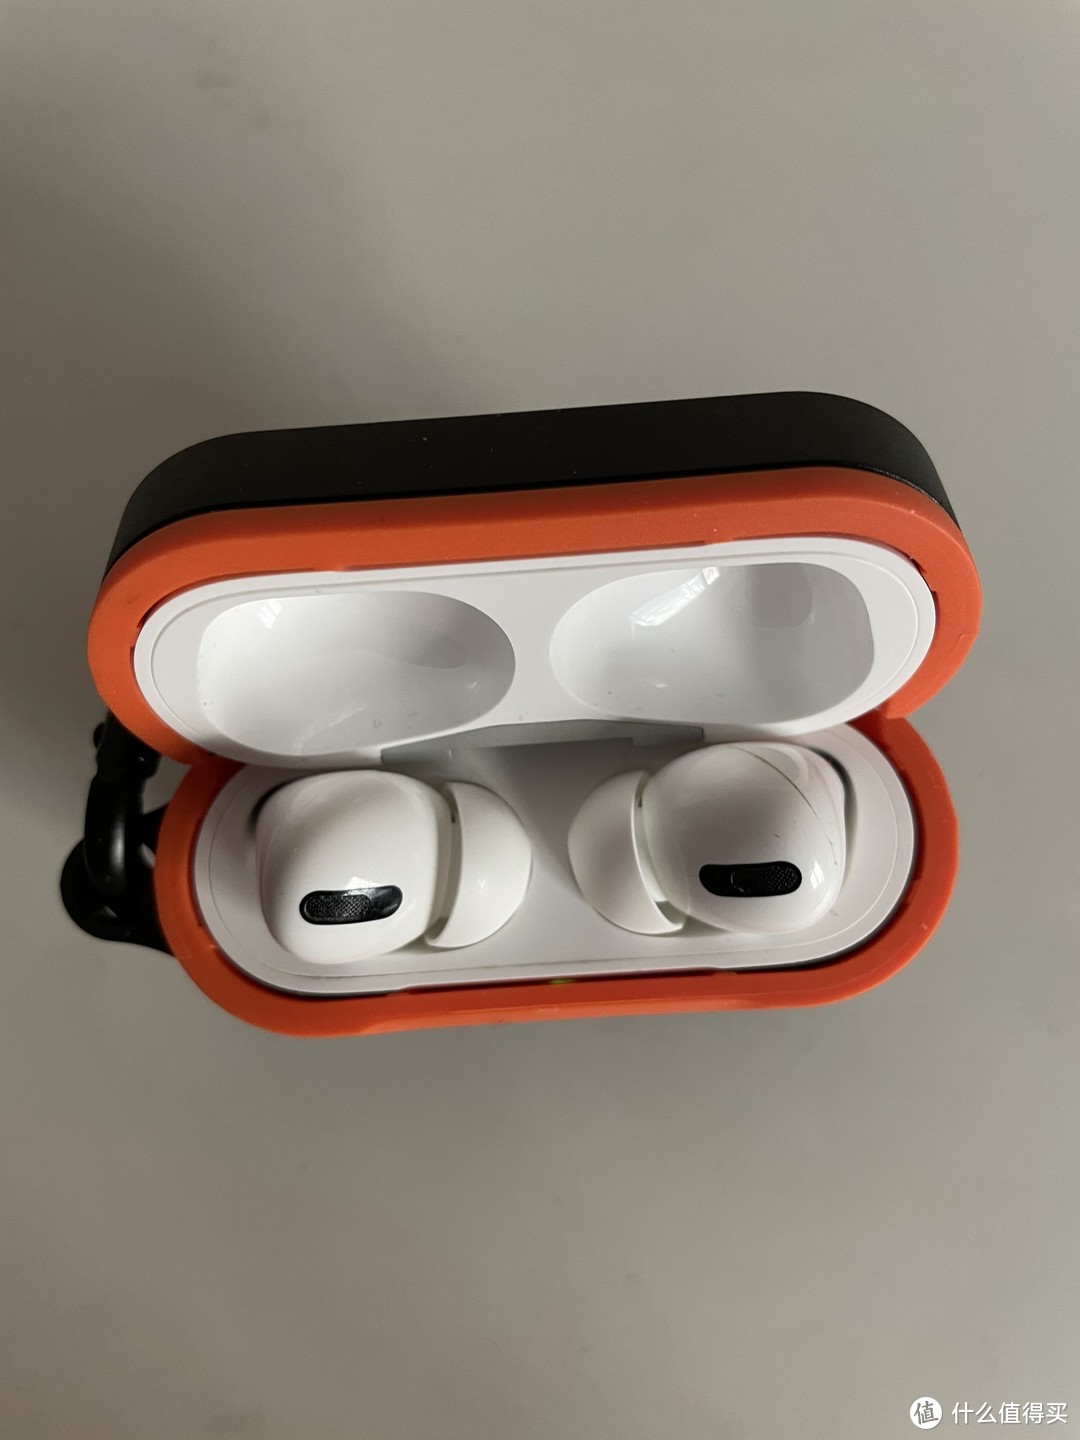 抗震防摔超级炫酷的小物件苹果蓝牙无线耳机套